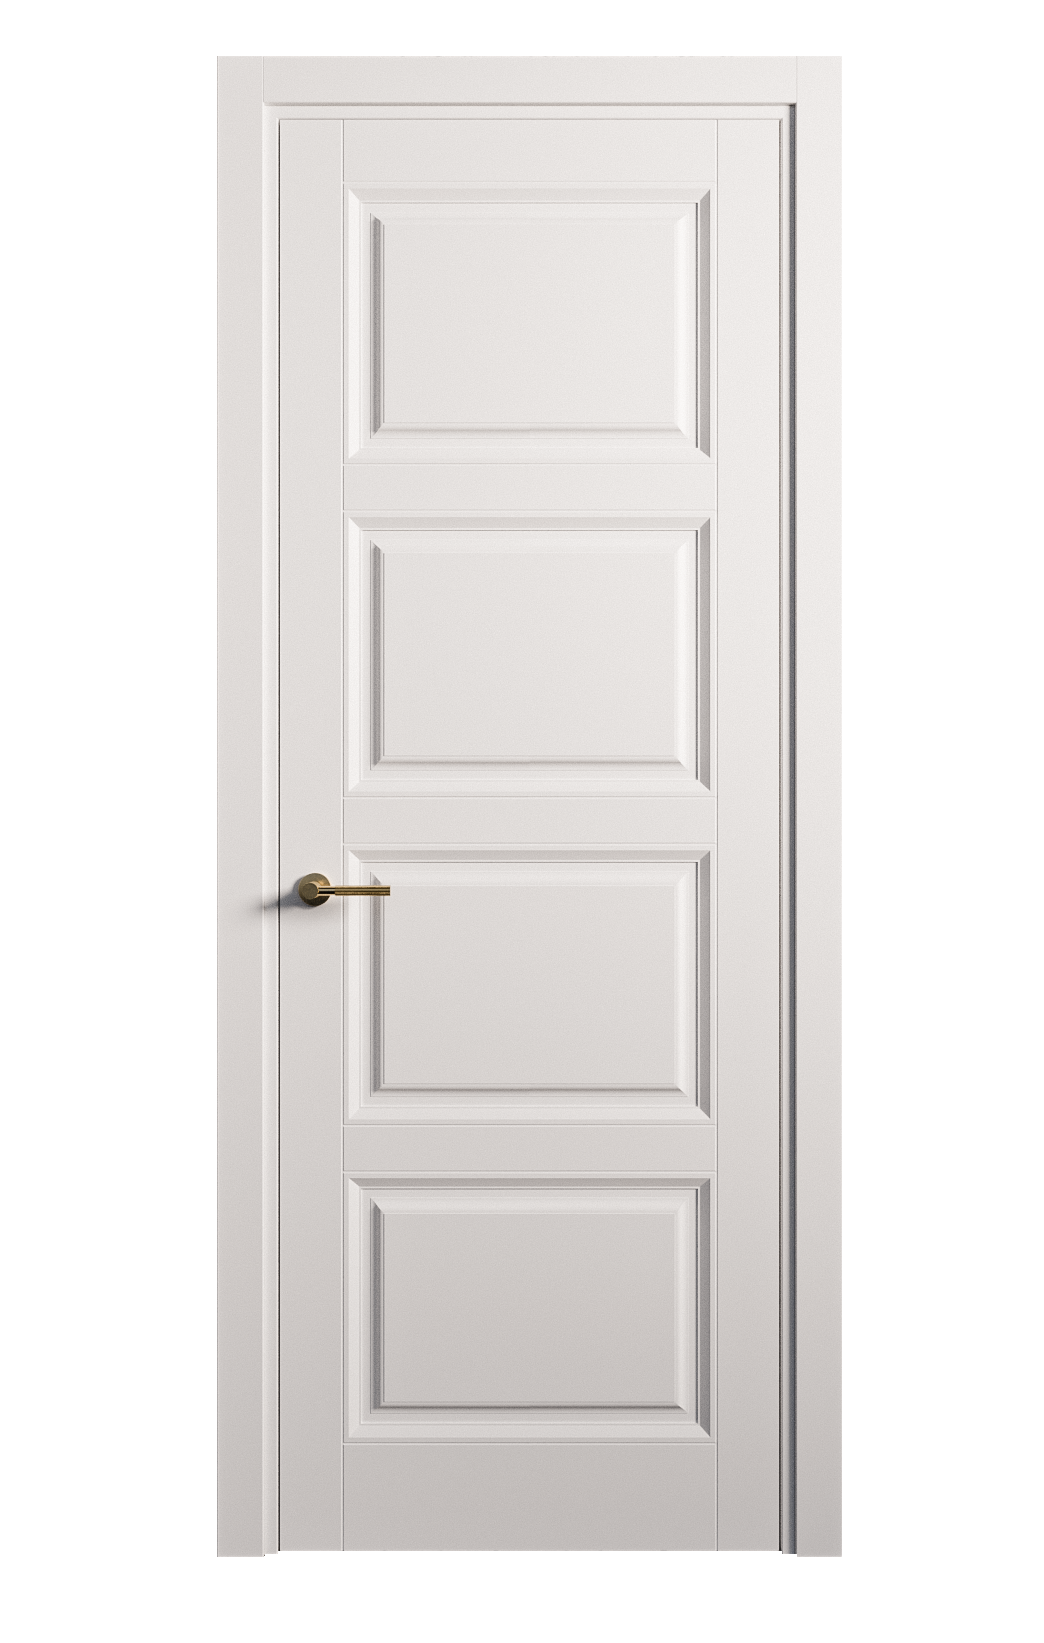 Межкомнатная дверь Venezia-4 глухая эмаль ral 9003 25856